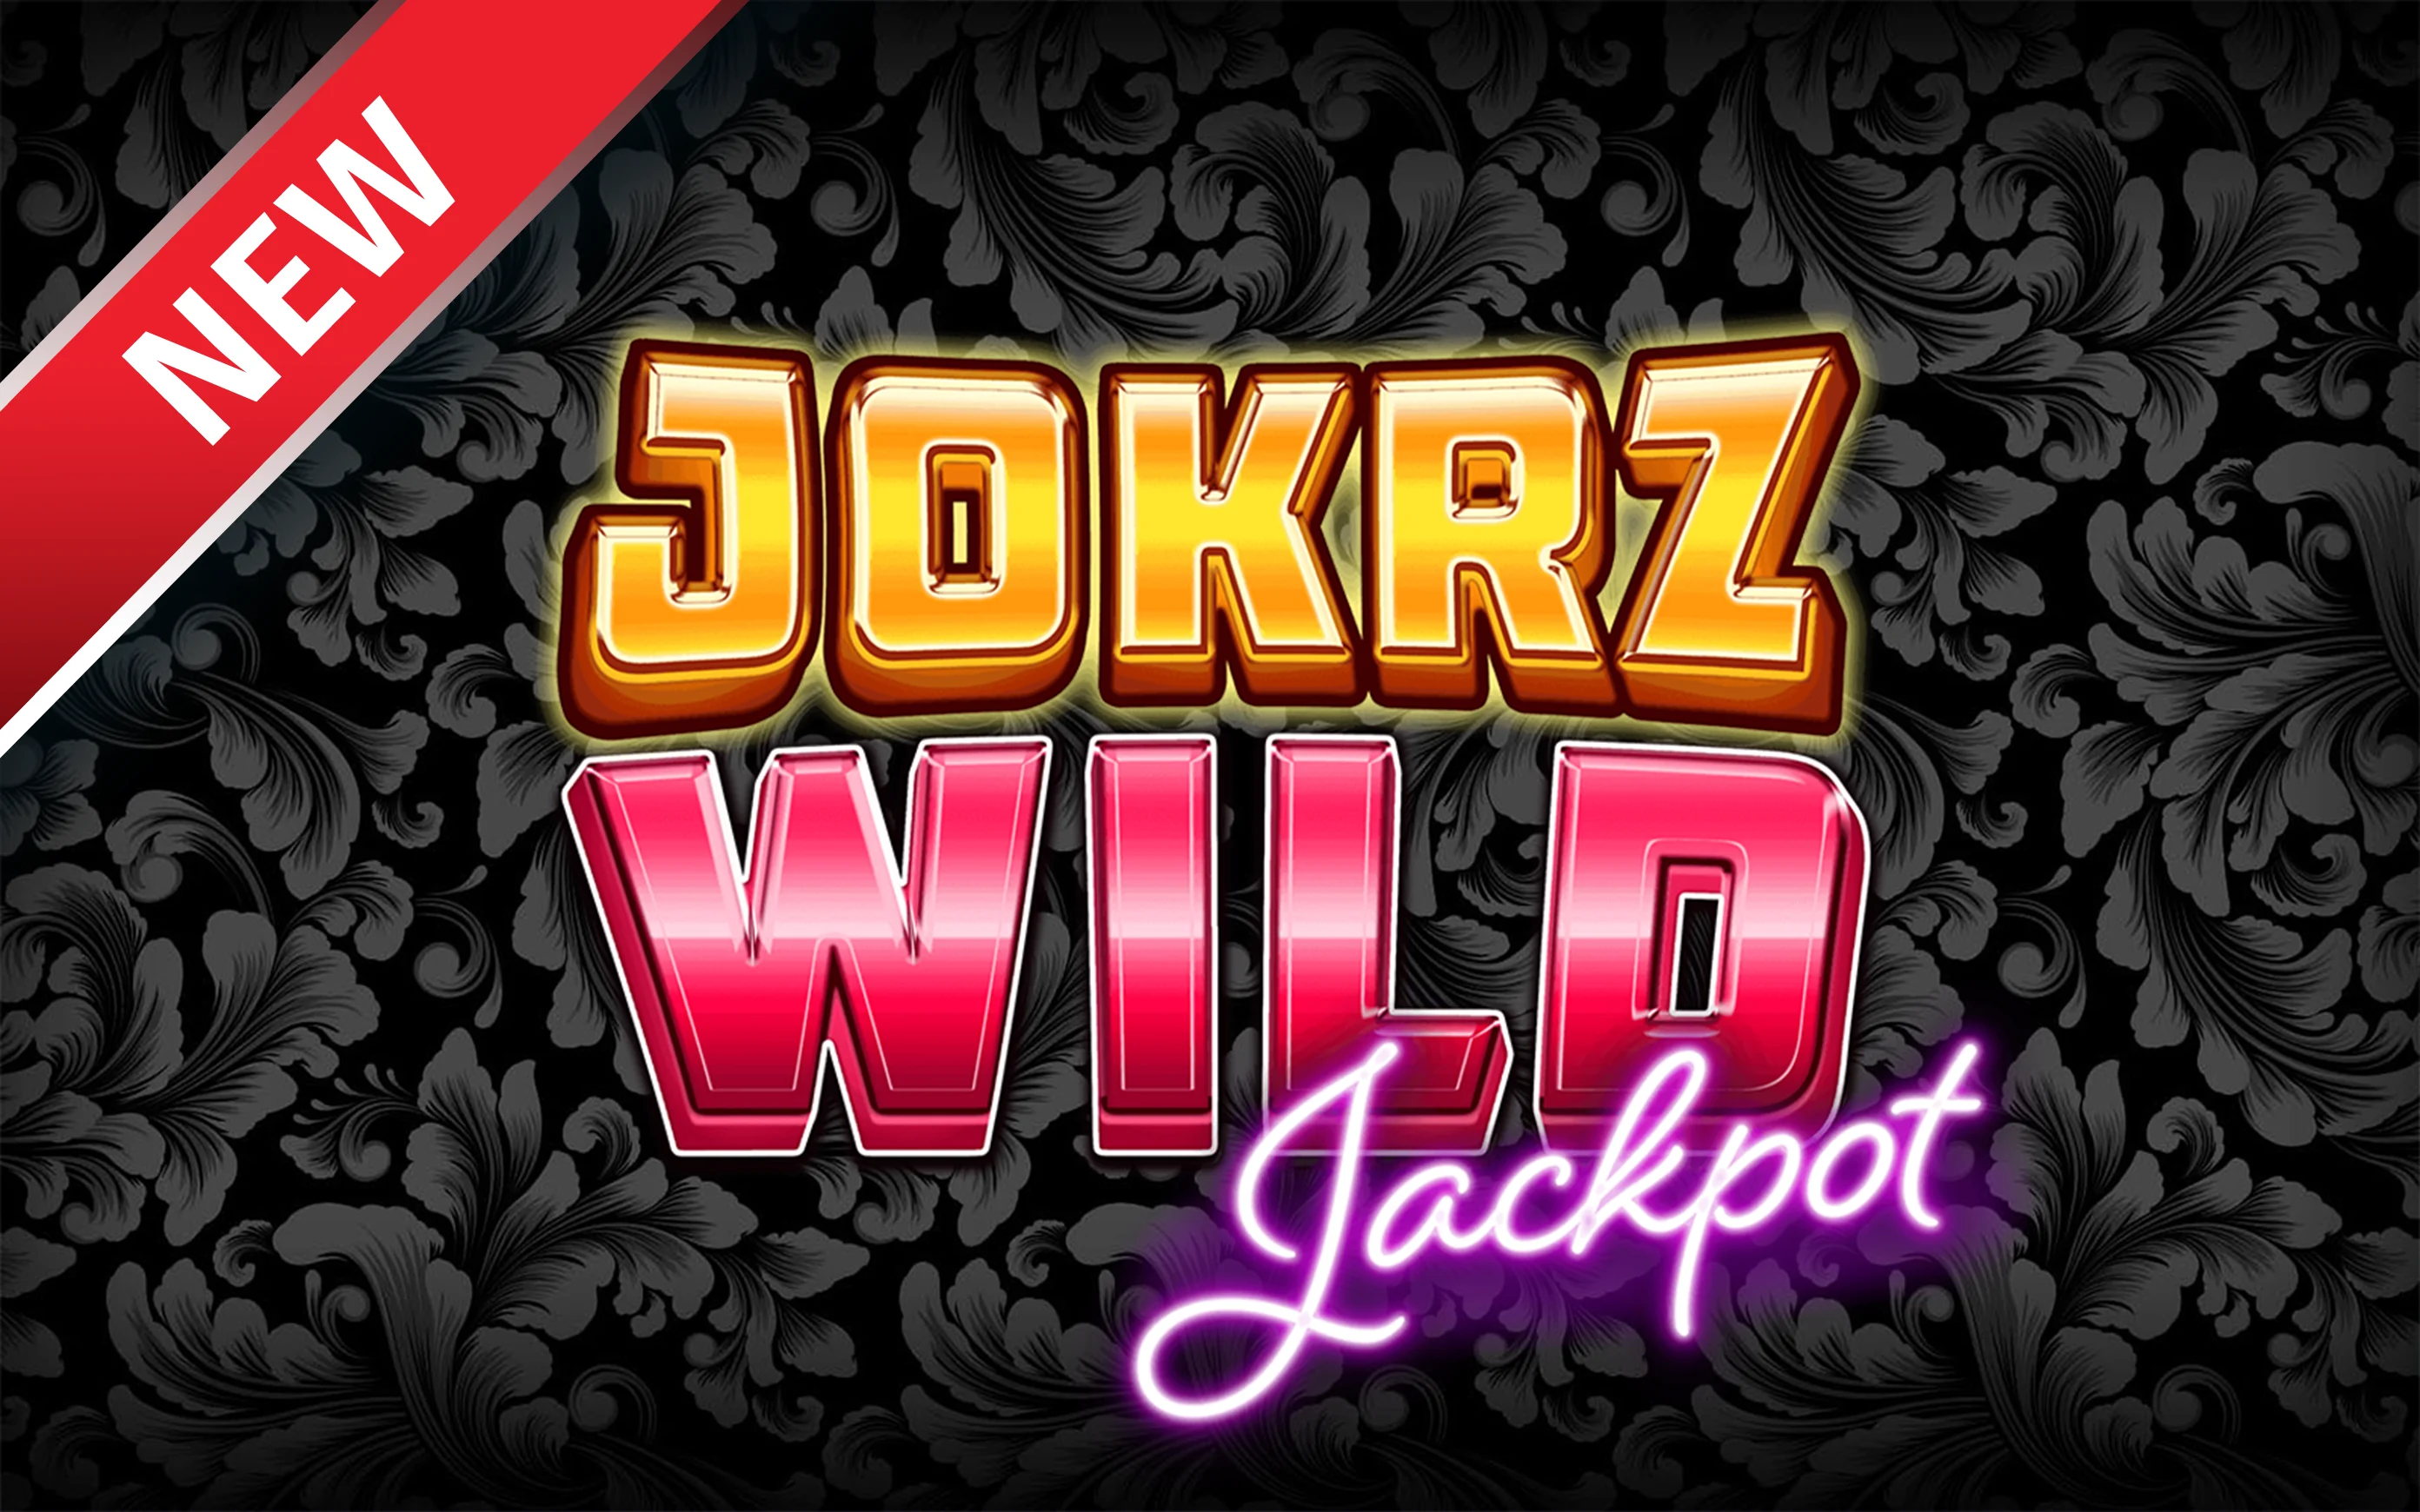 Starcasino.be online casino üzerinden Jokrz Wild Jackpot oynayın